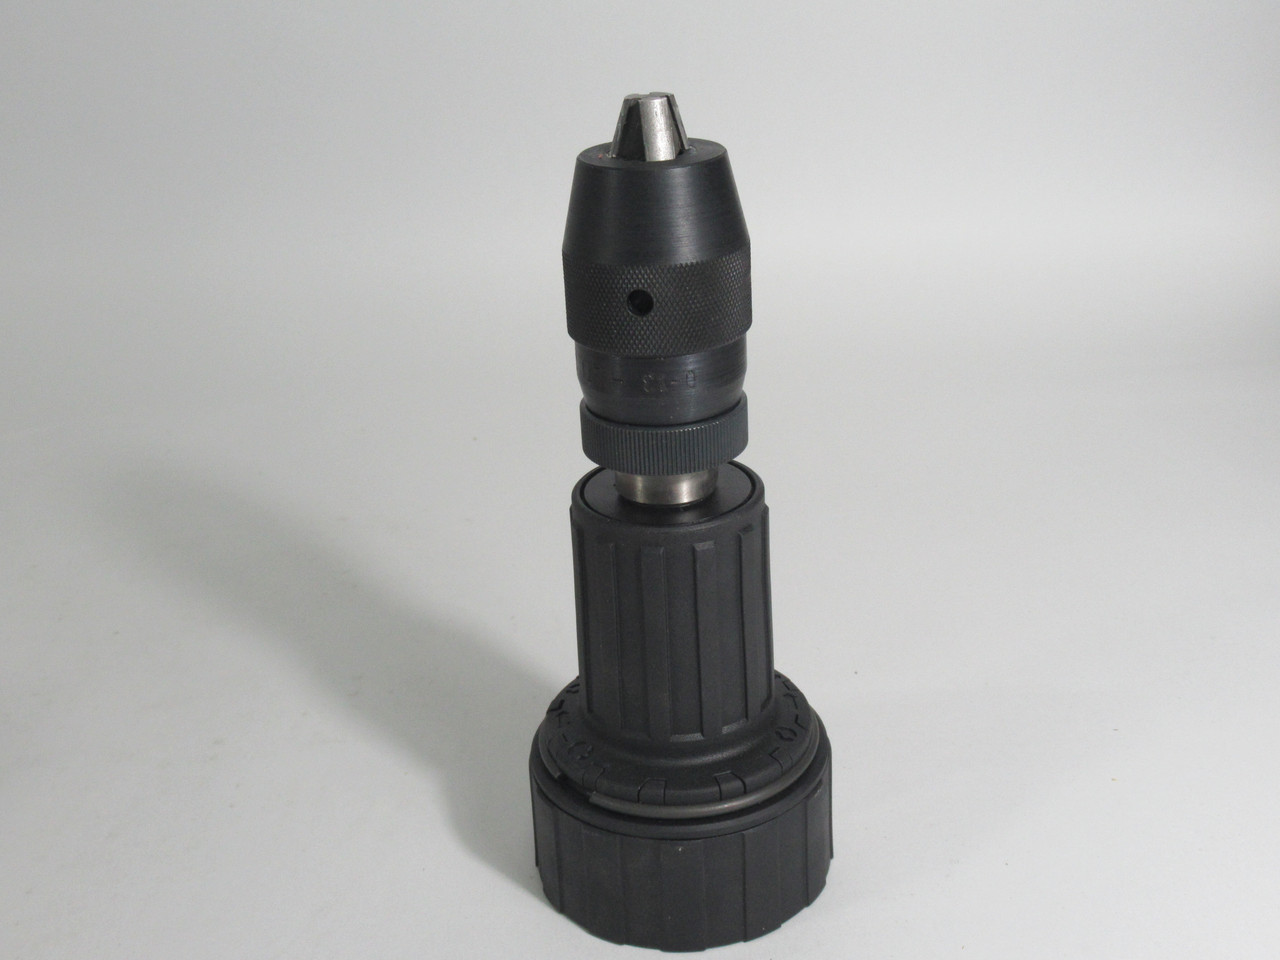 Hilti 0-1/2 Keyless Drill Chuck 0-13mm USED